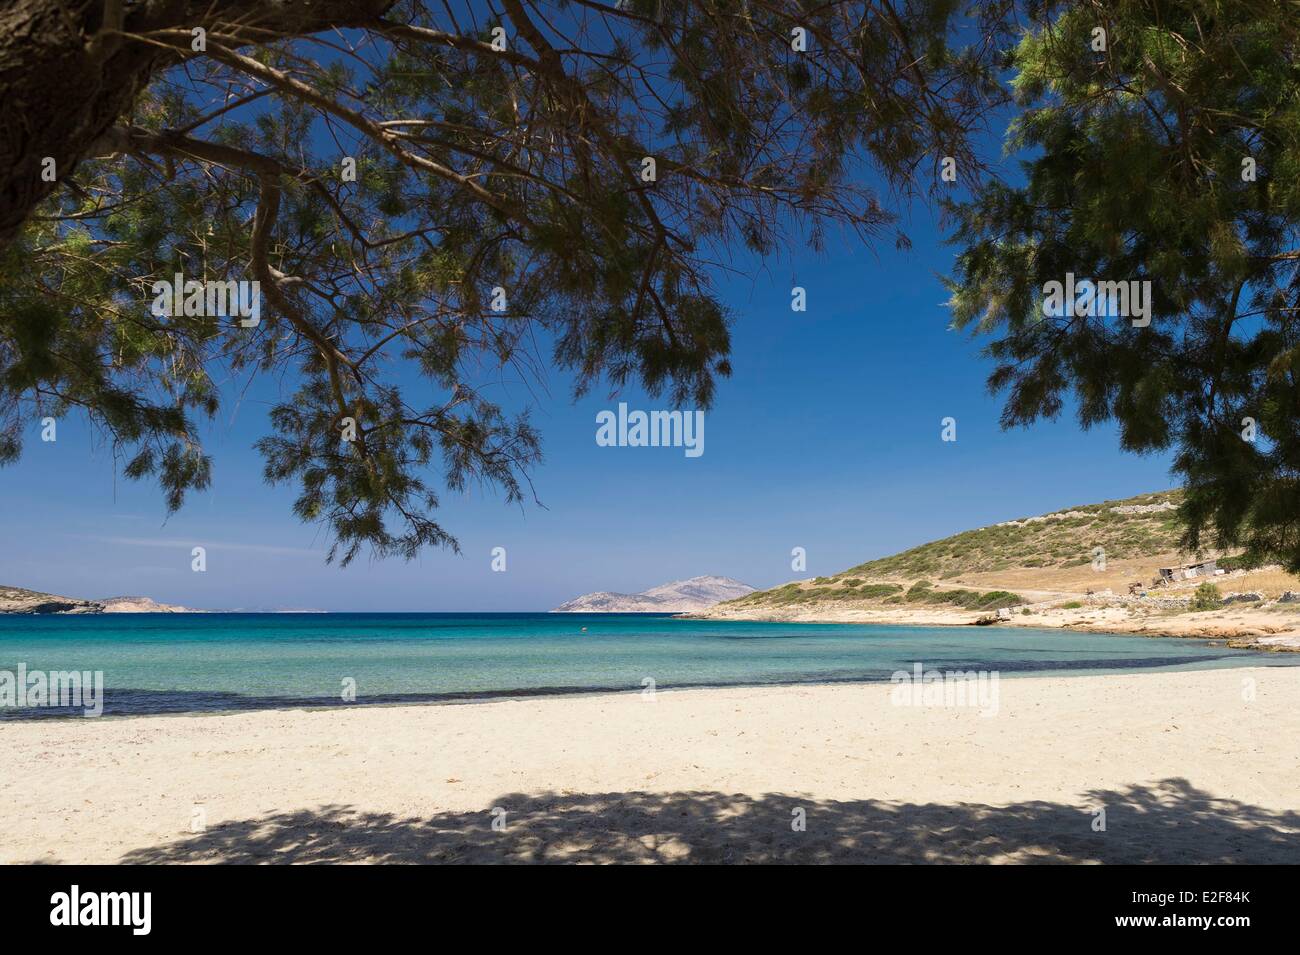 Greece, Cyclades islands, Small Cyclades, Schinoussa island, Lioliou beach  Stock Photo - Alamy